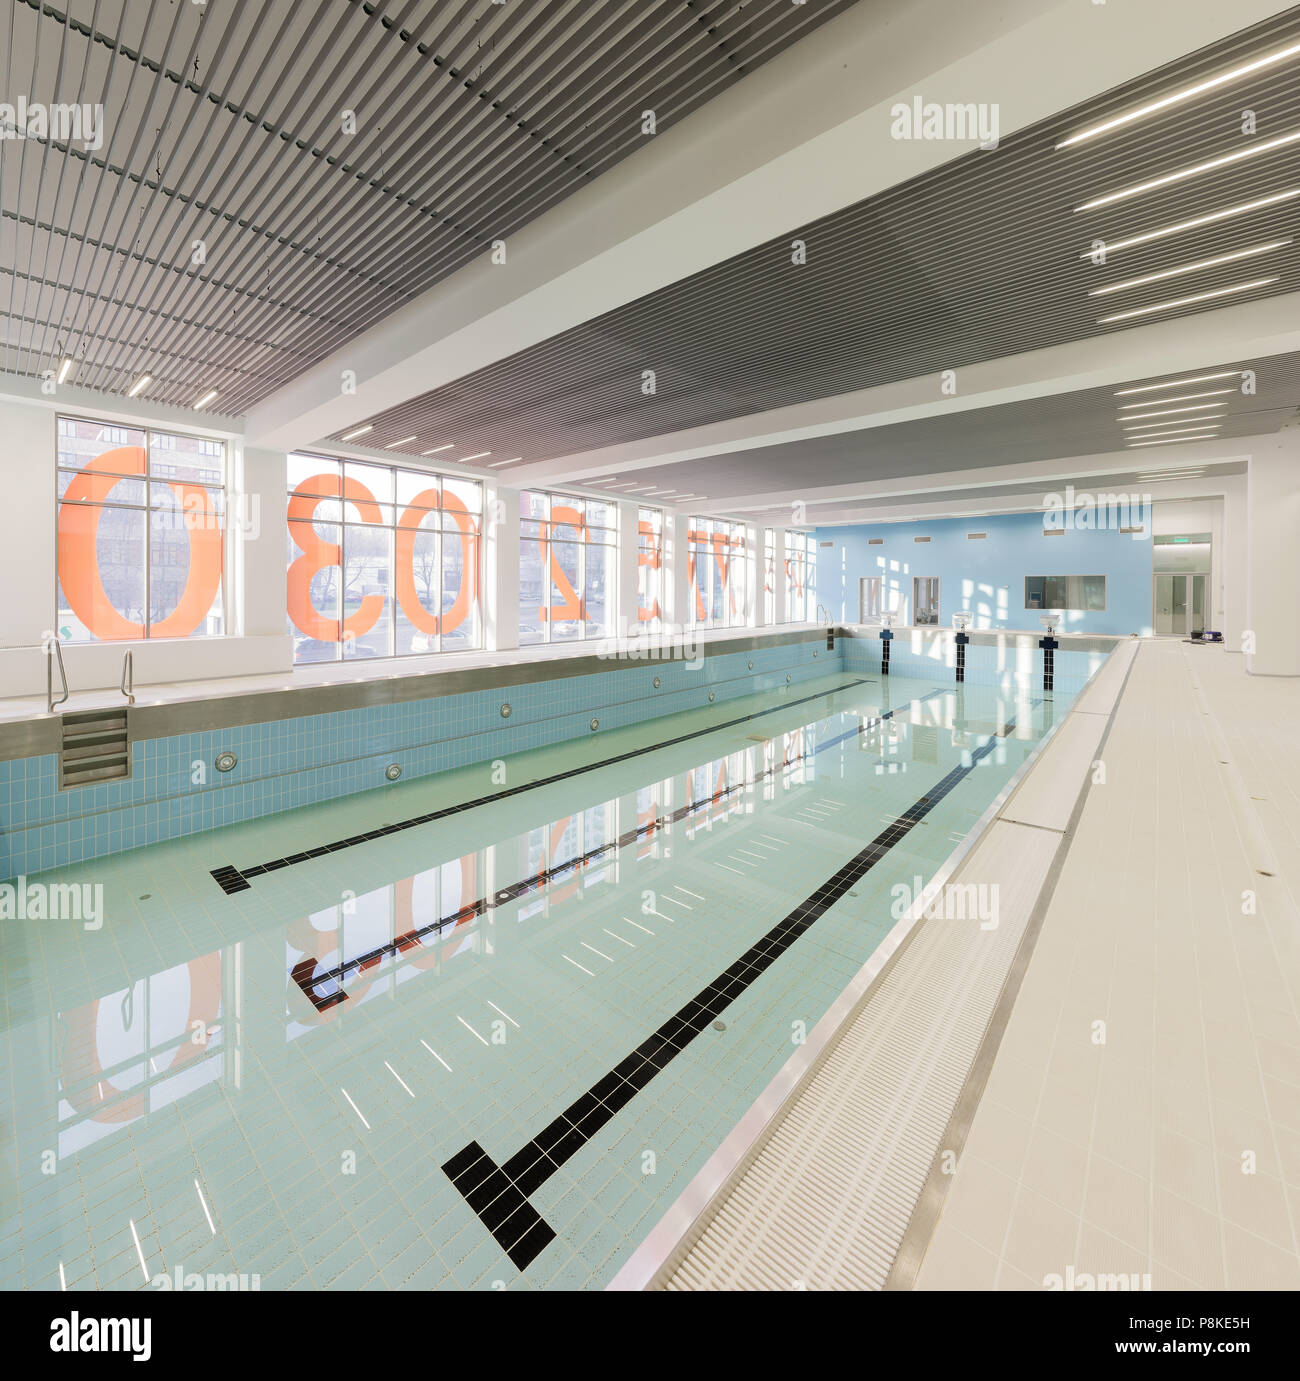 Moscou - 15 octobre. La piscine vide de l'école réserve olympique prend ses premiers visiteurs le 15 octobre 2015 à Moscou Banque D'Images